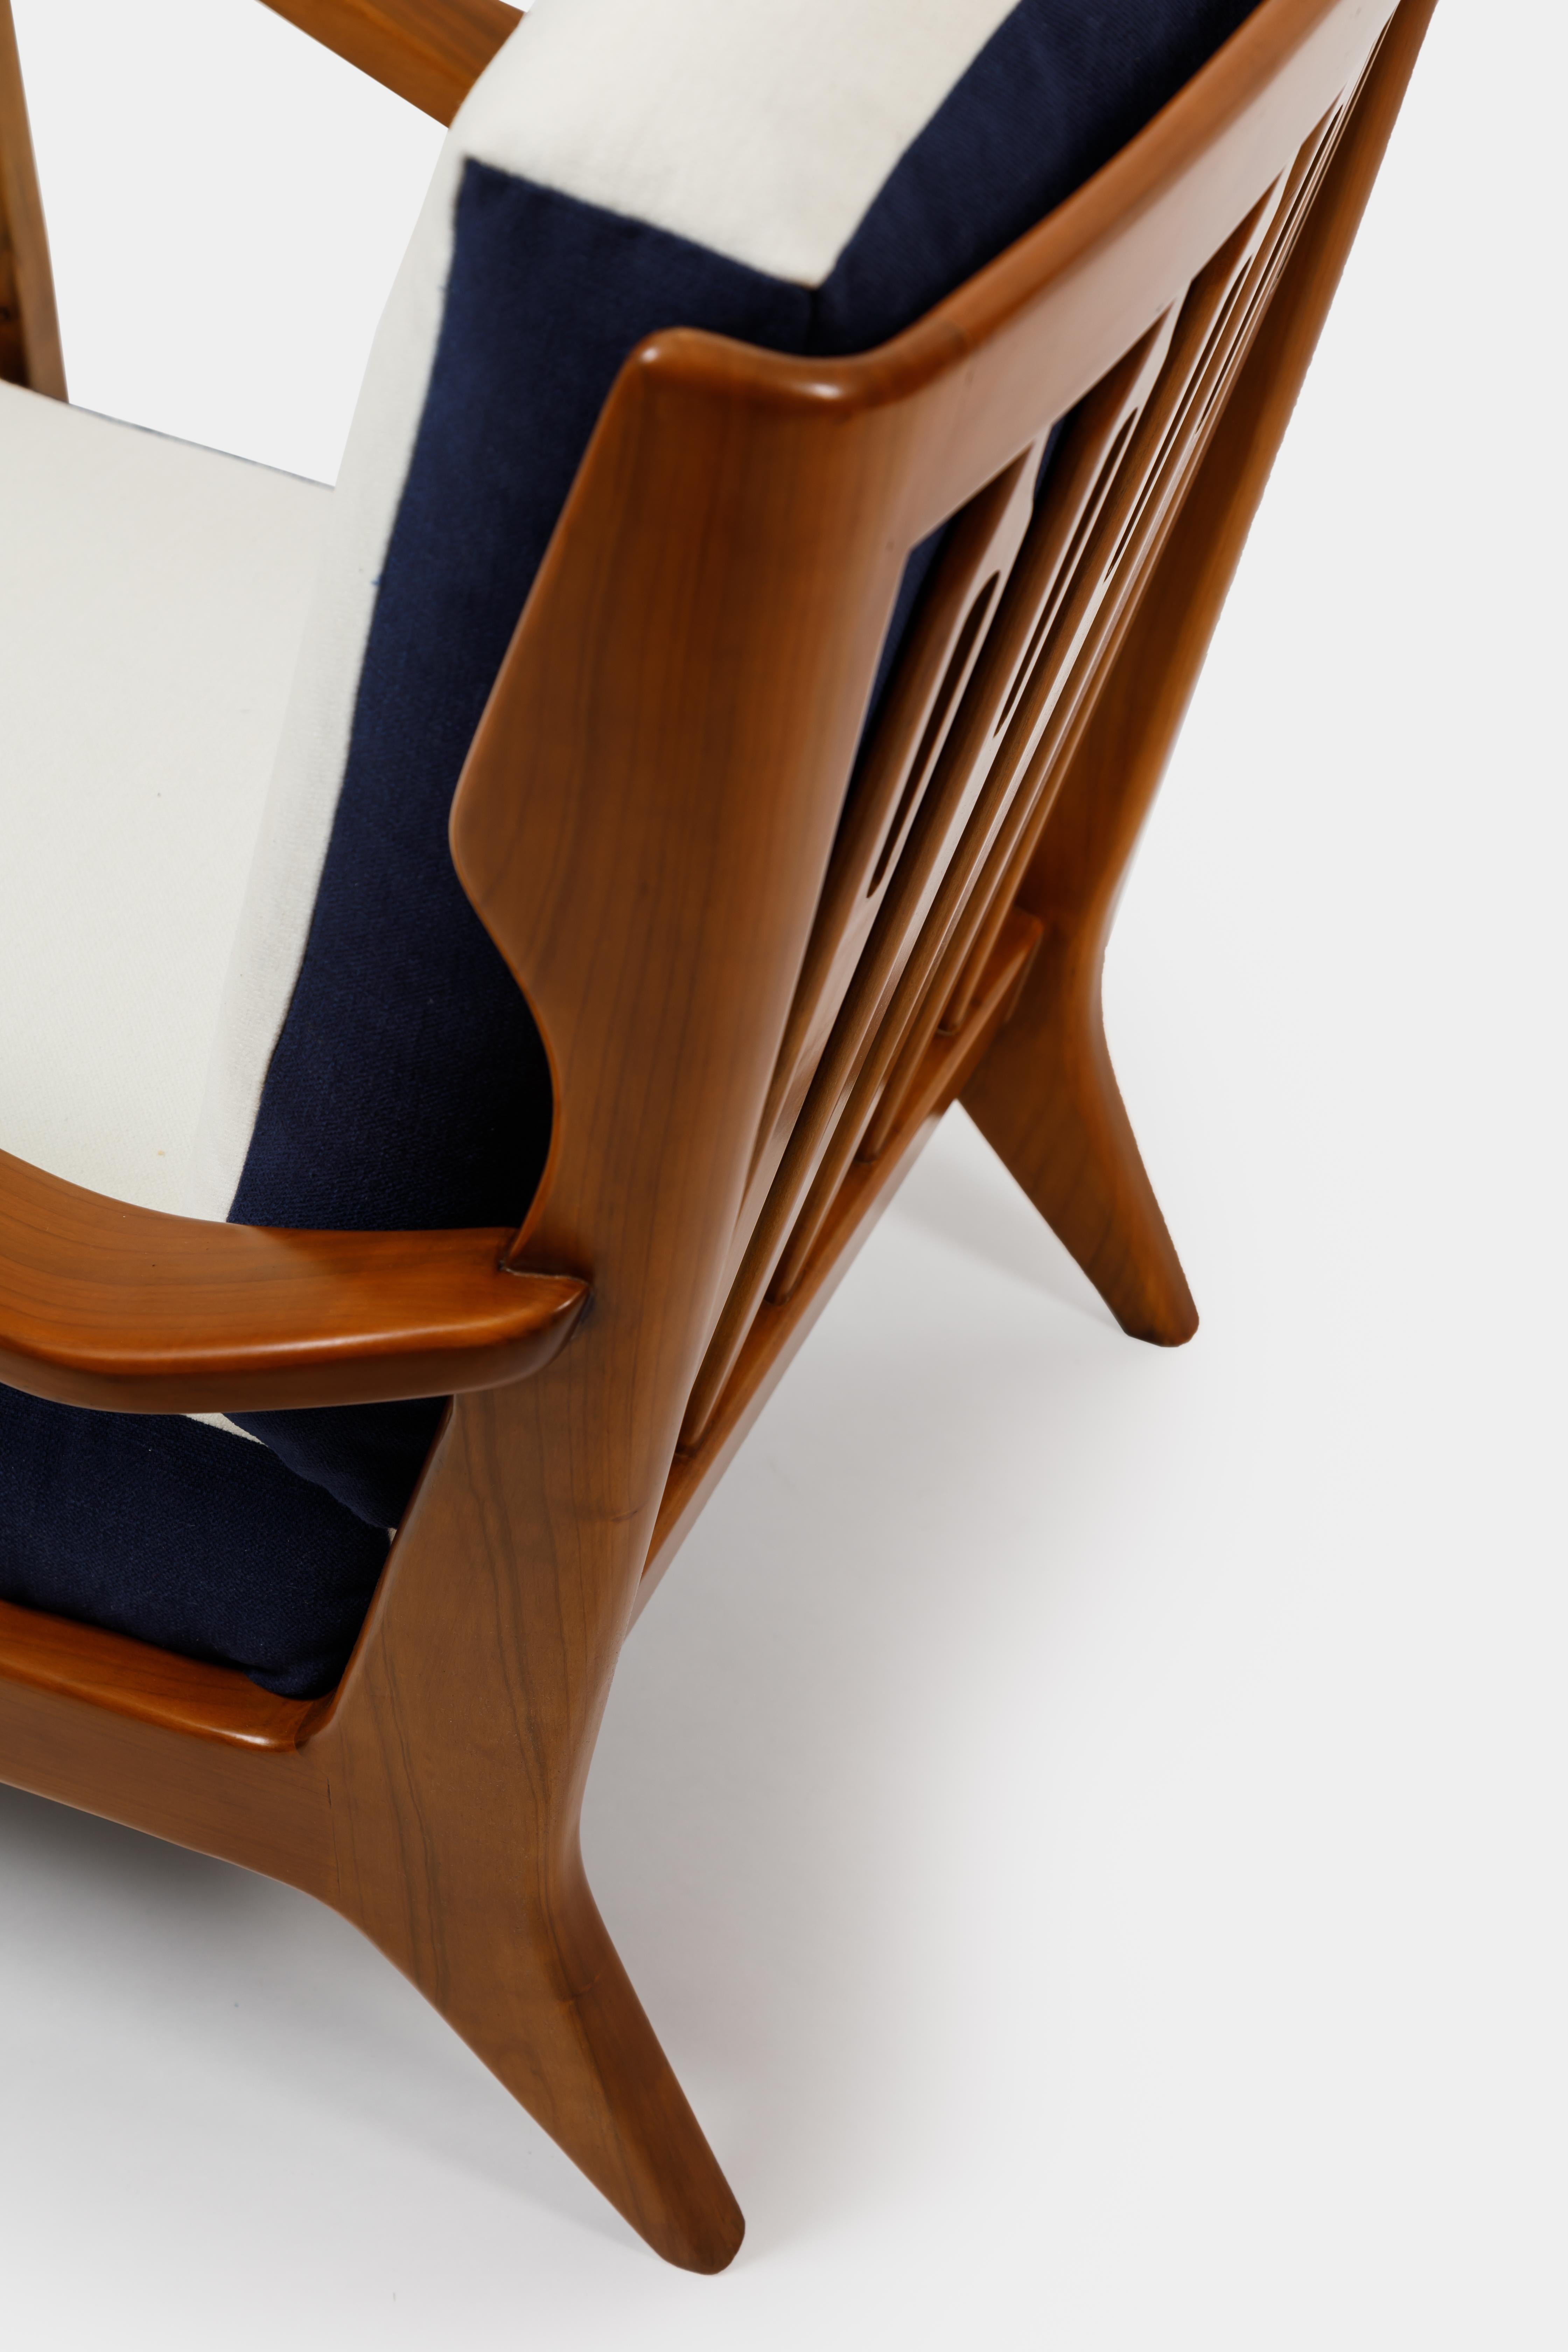 Gio Ponti für Cassina Paar Sessel aus Nussbaumholz Modell 516 1